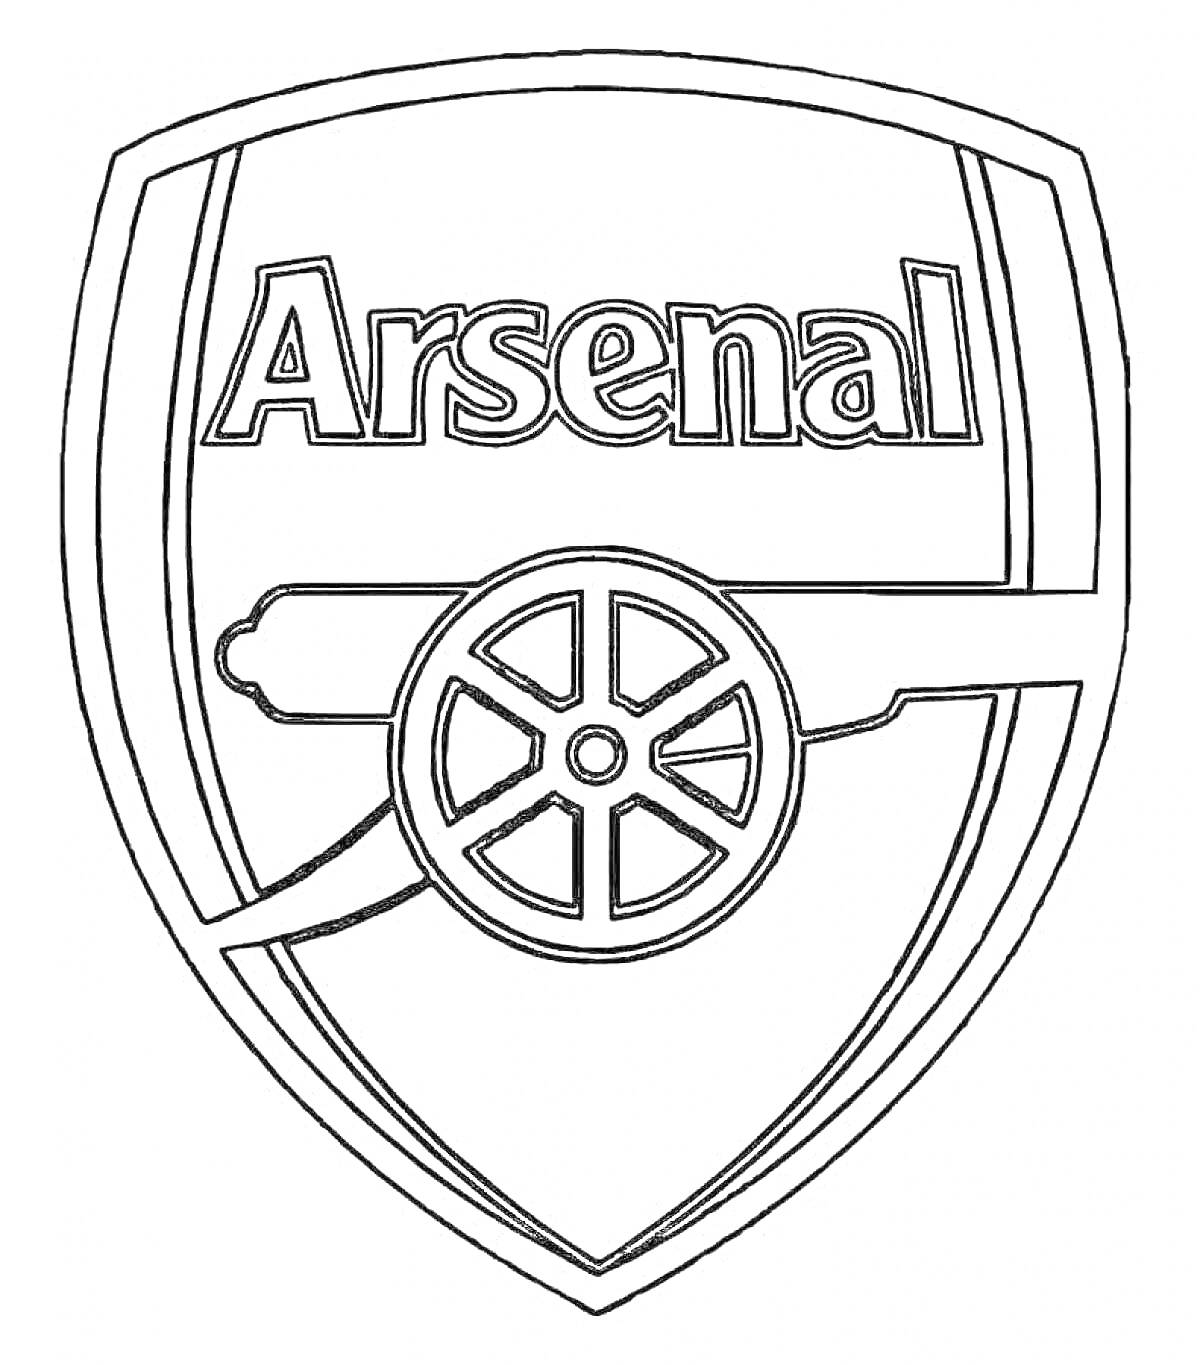 Логотип команды Arsenal, содержится слово 